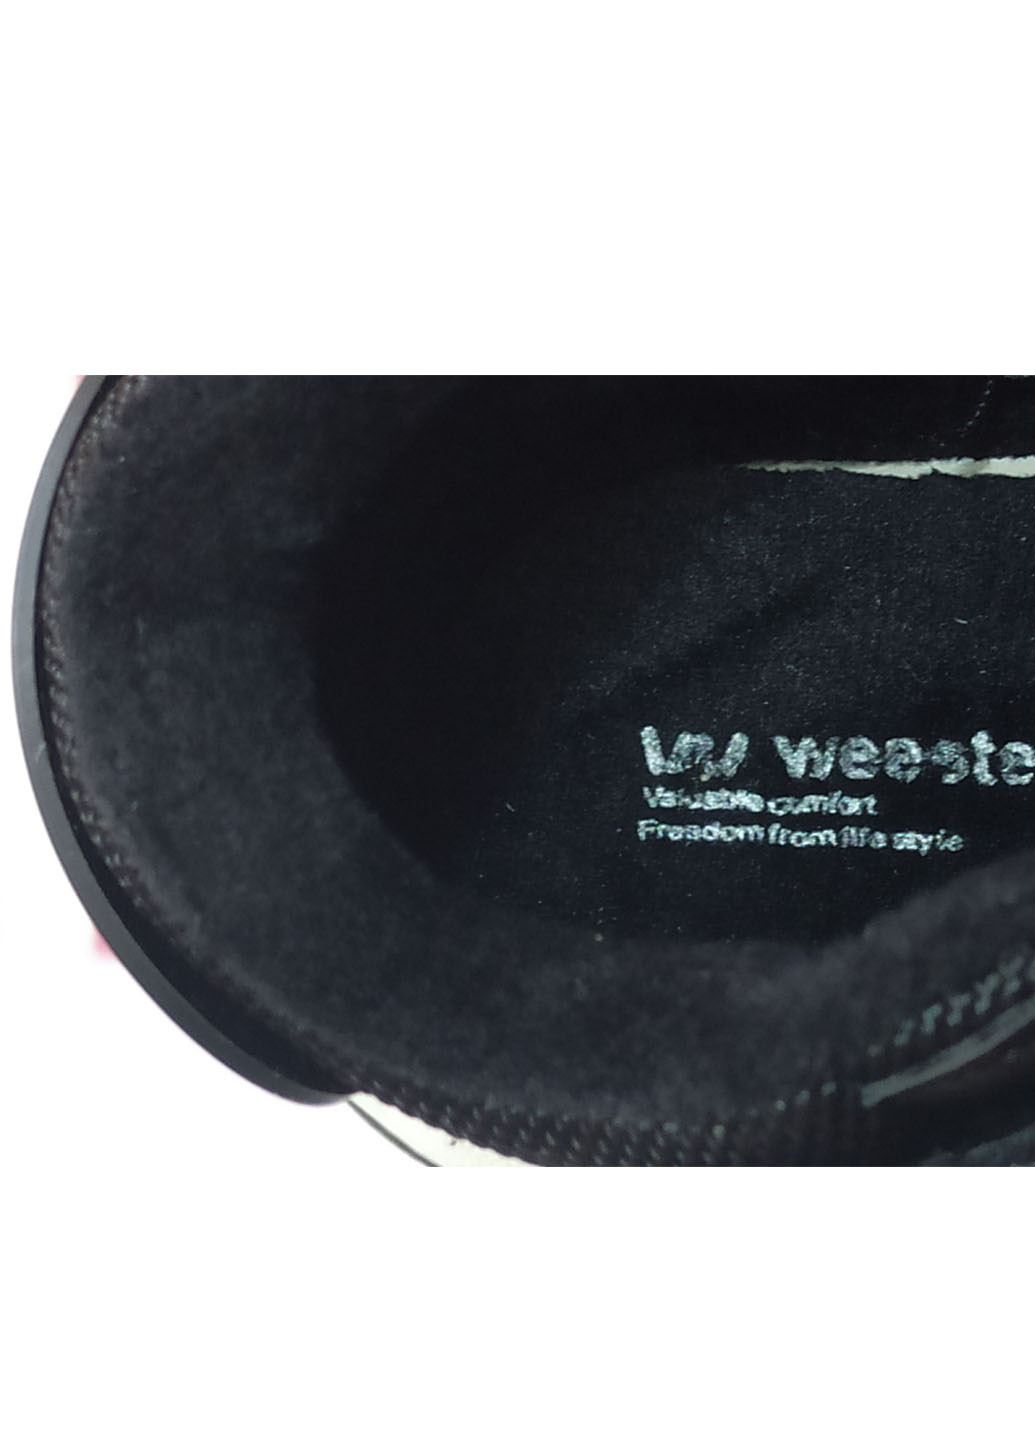 Черные повседневные осенние демисезонные ботинки для мальчика утепленные на флисе 55953вк 28-17,5см 31-19см Weestep